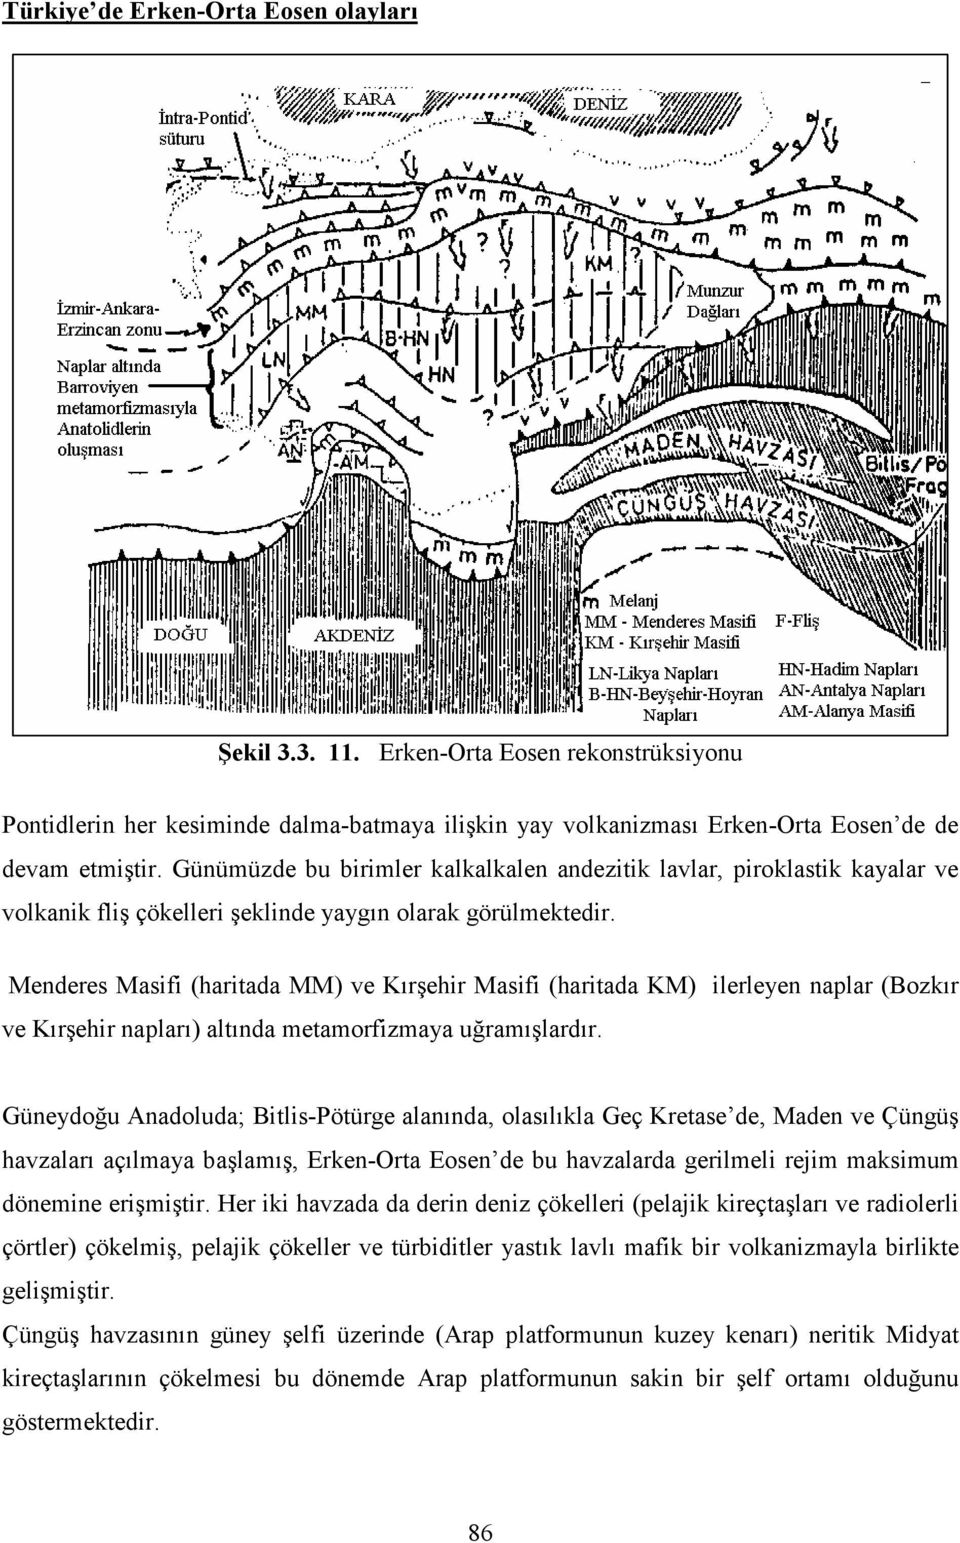 Menderes Masifi (haritada MM) ve Kırşehir Masifi (haritada KM) ilerleyen naplar (Bozkır ve Kırşehir napları) altında metamorfizmaya uğramışlardır.